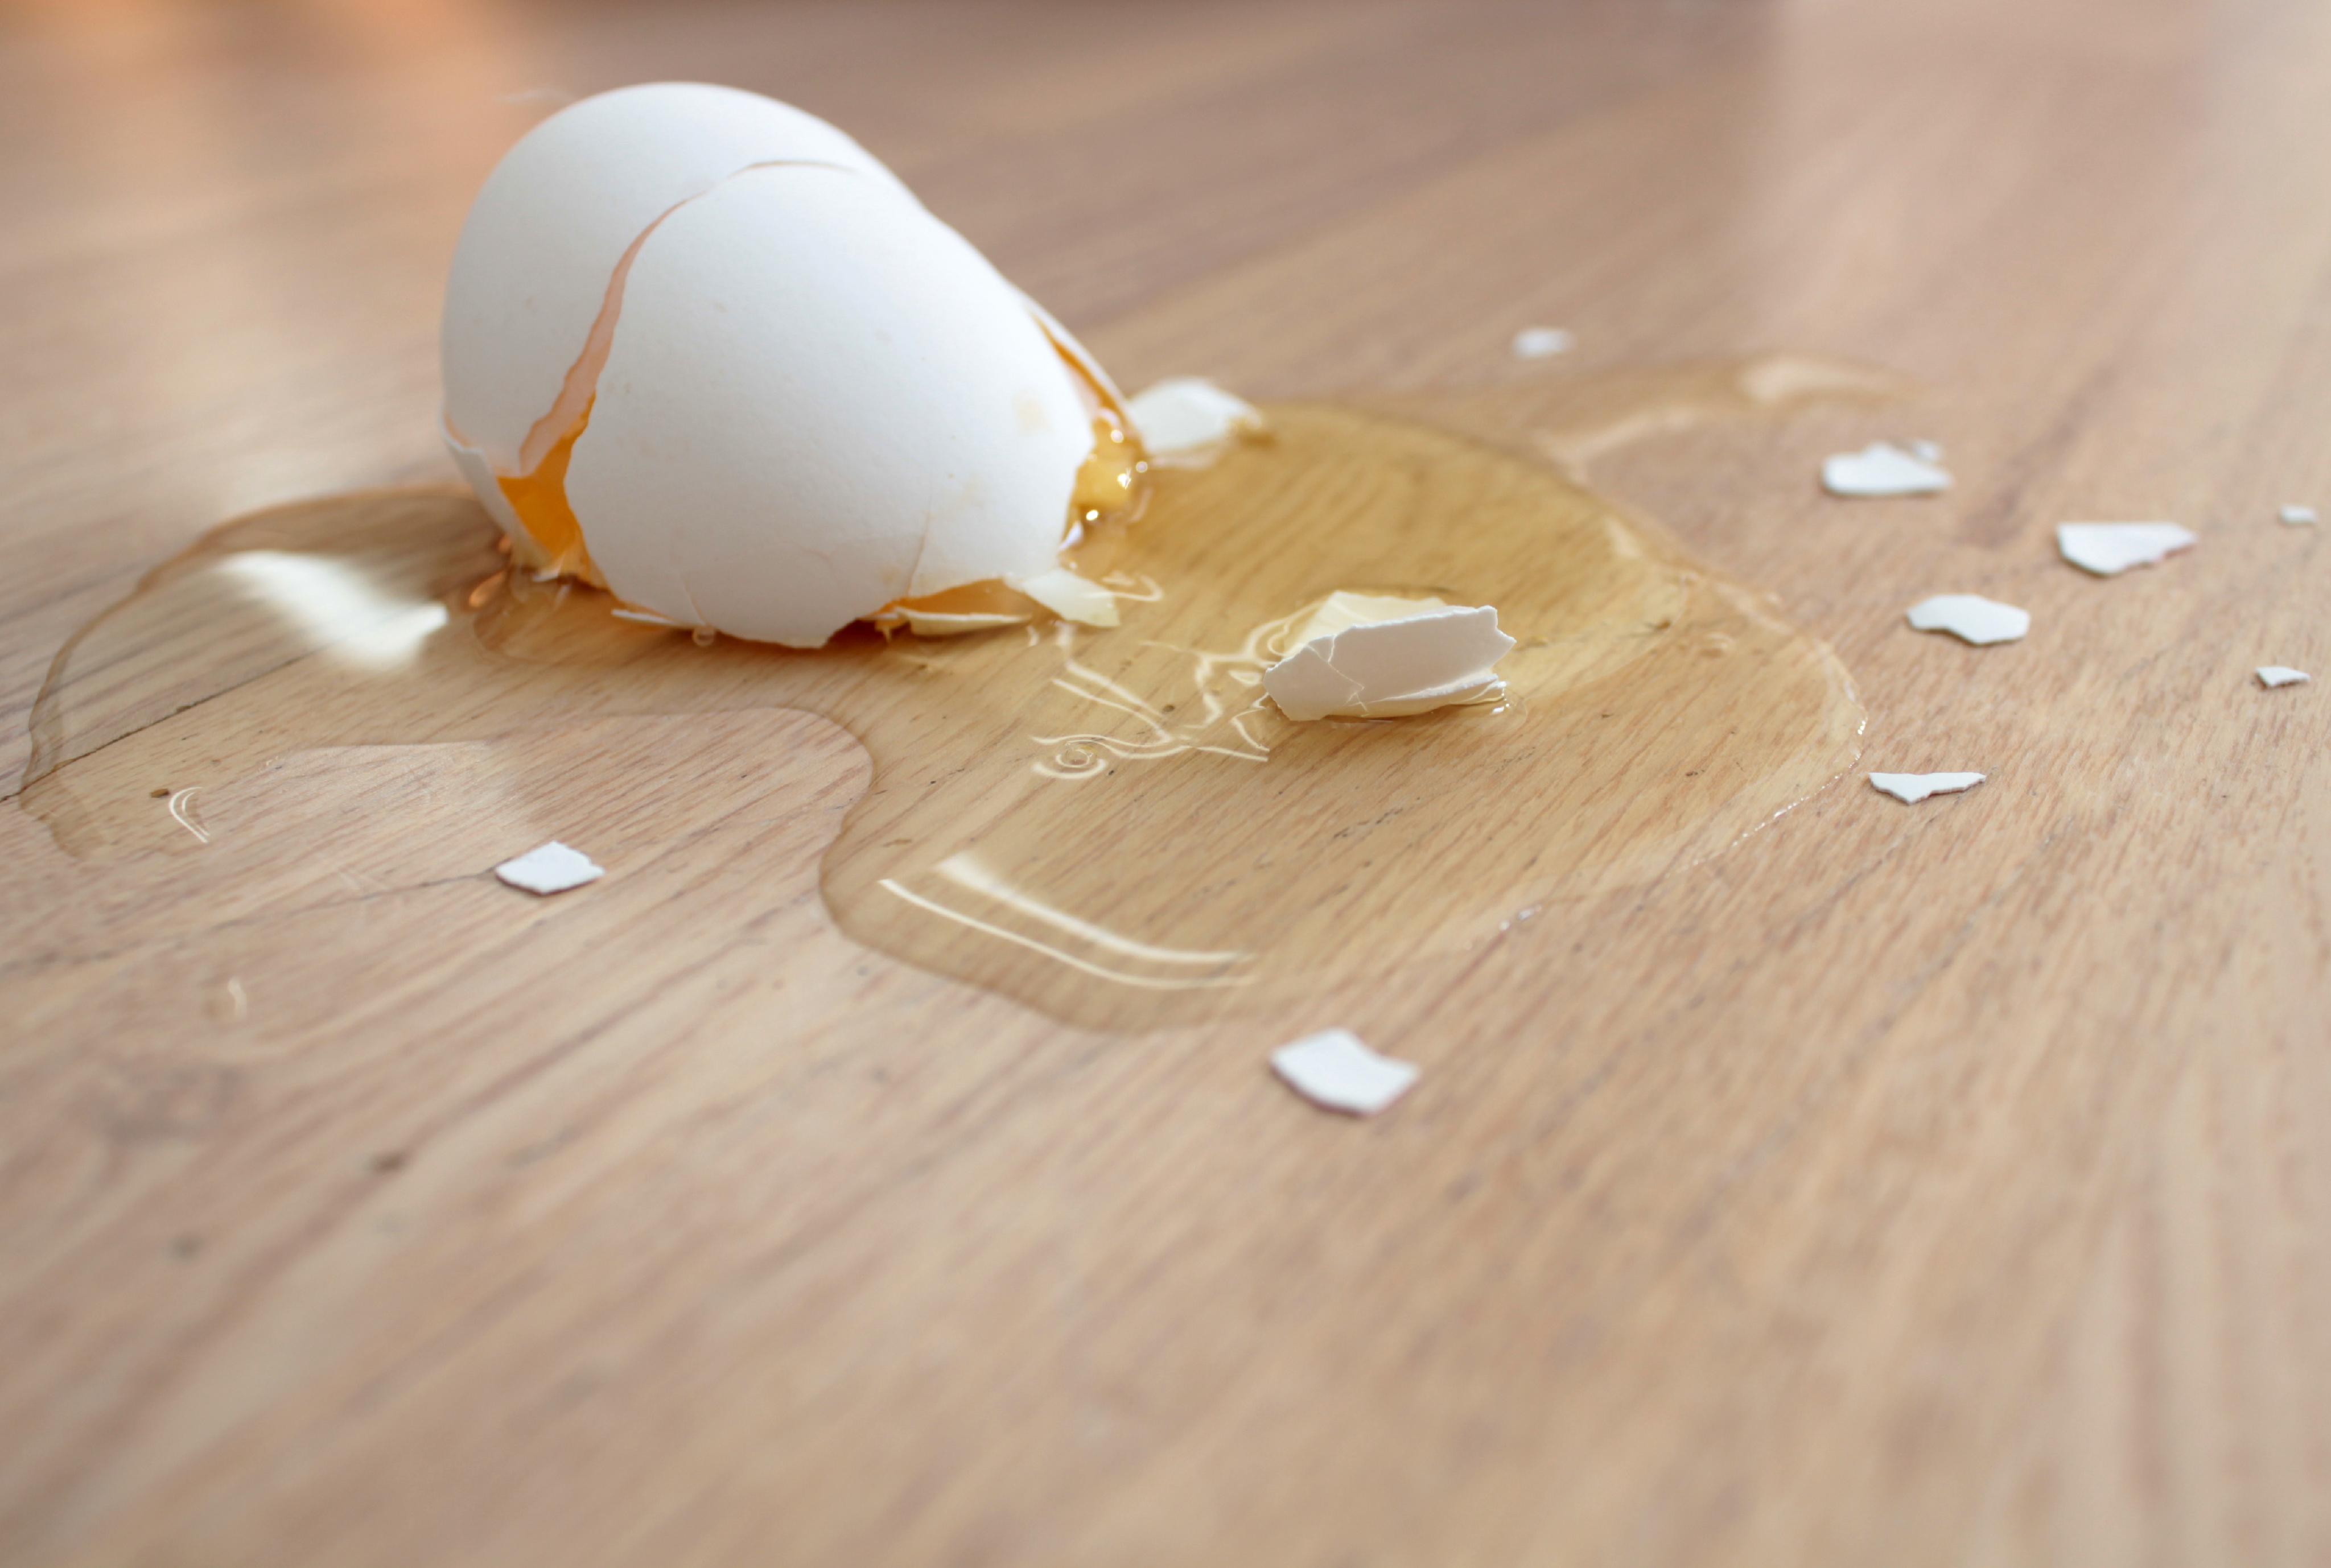 Broken on the floor. Разбитое яйцо. Яйцо разбилось. Разбитые яйца. Разбитое куриное яйцо.